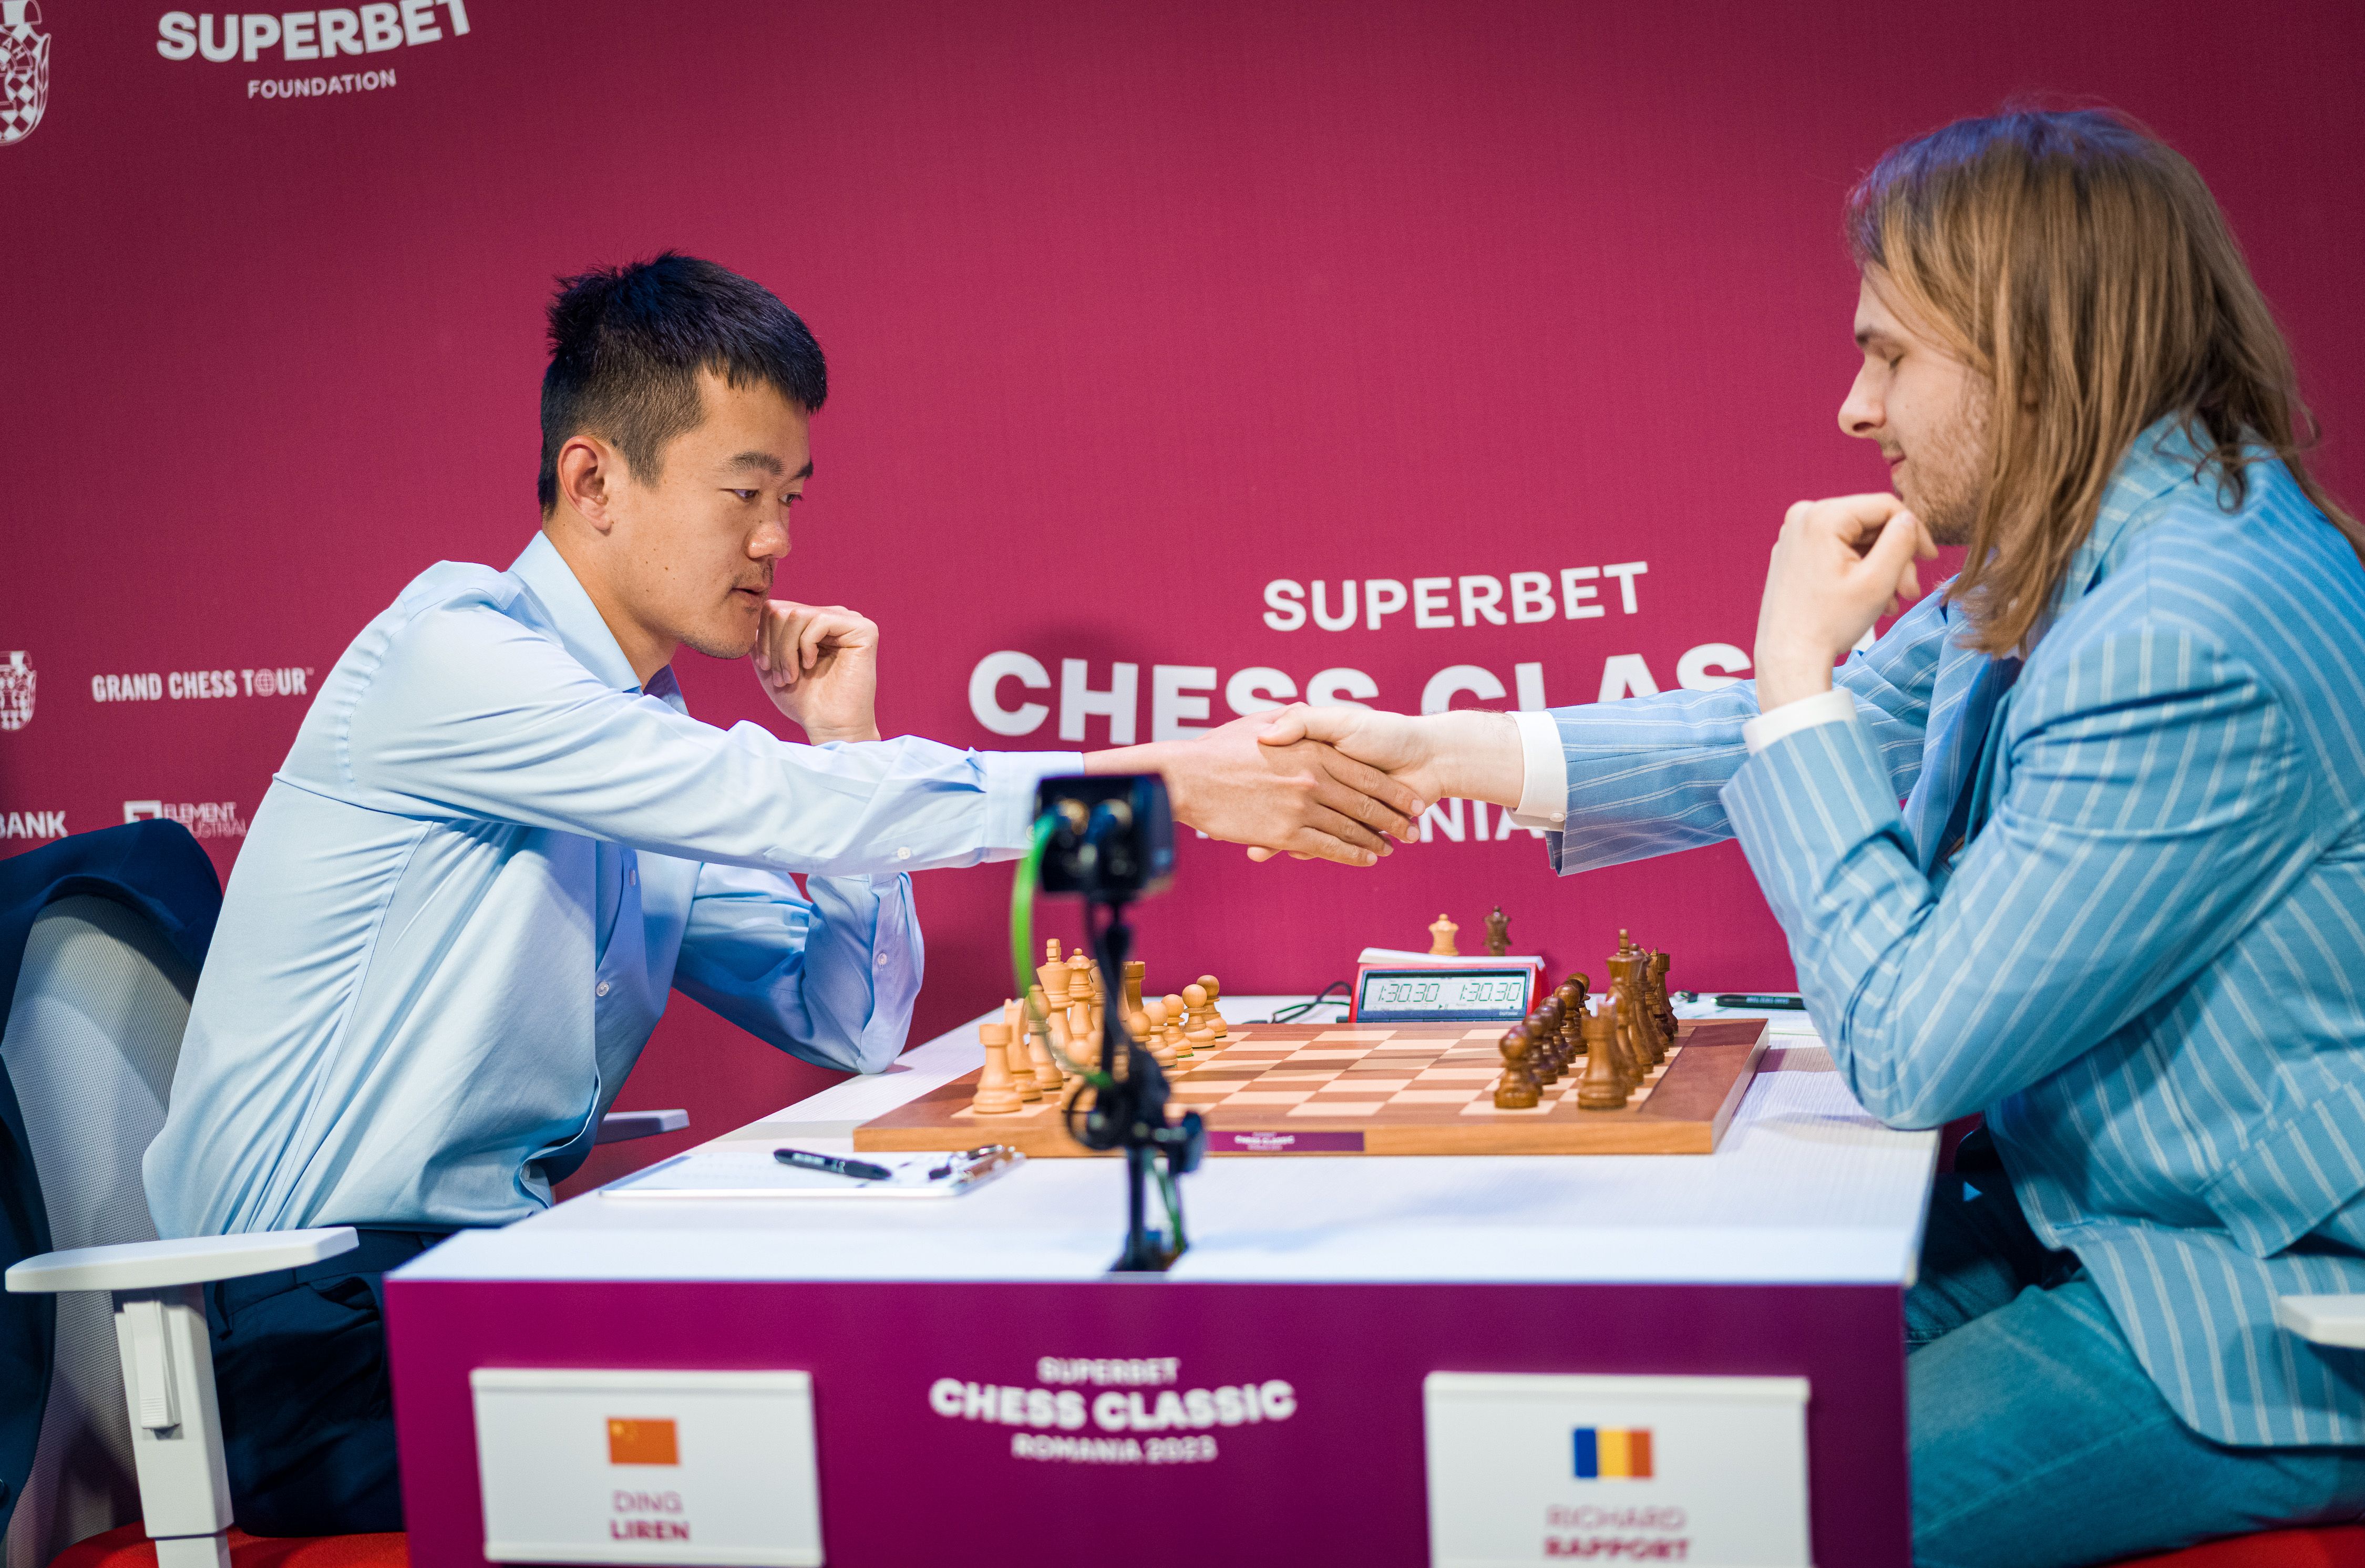 Caruana wins Superbet Chess Classic Romania